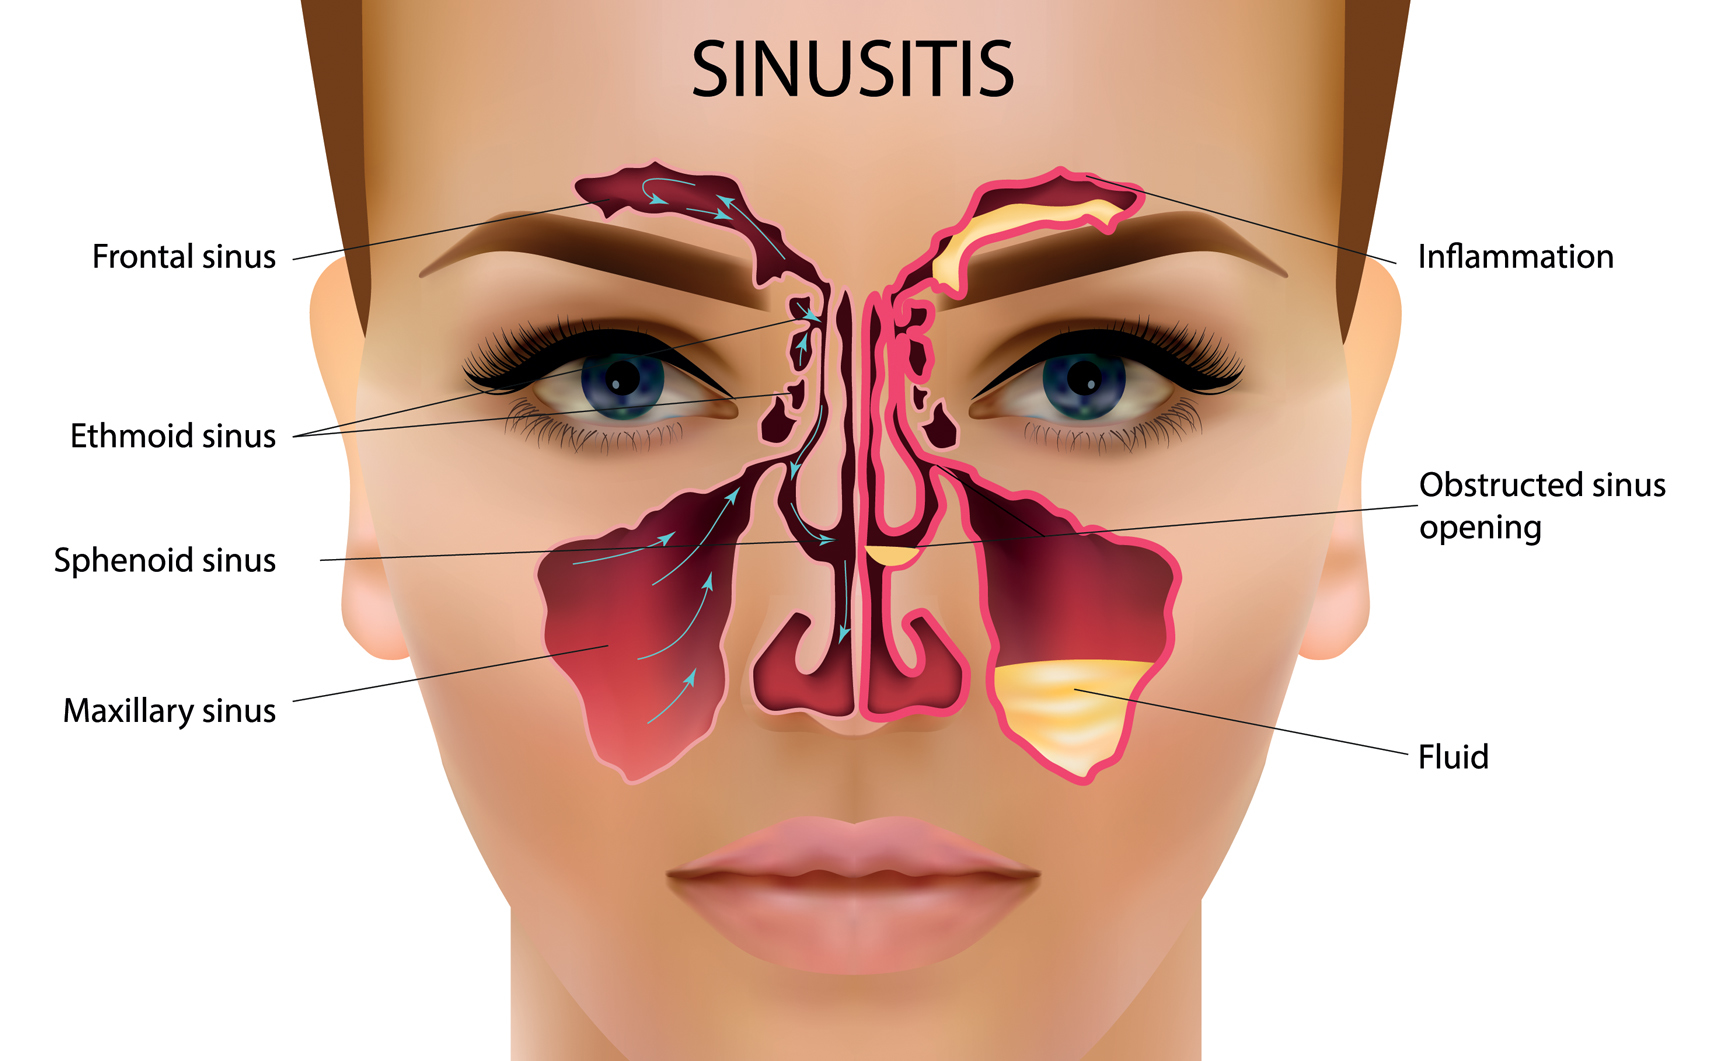 Chronic sinusitis